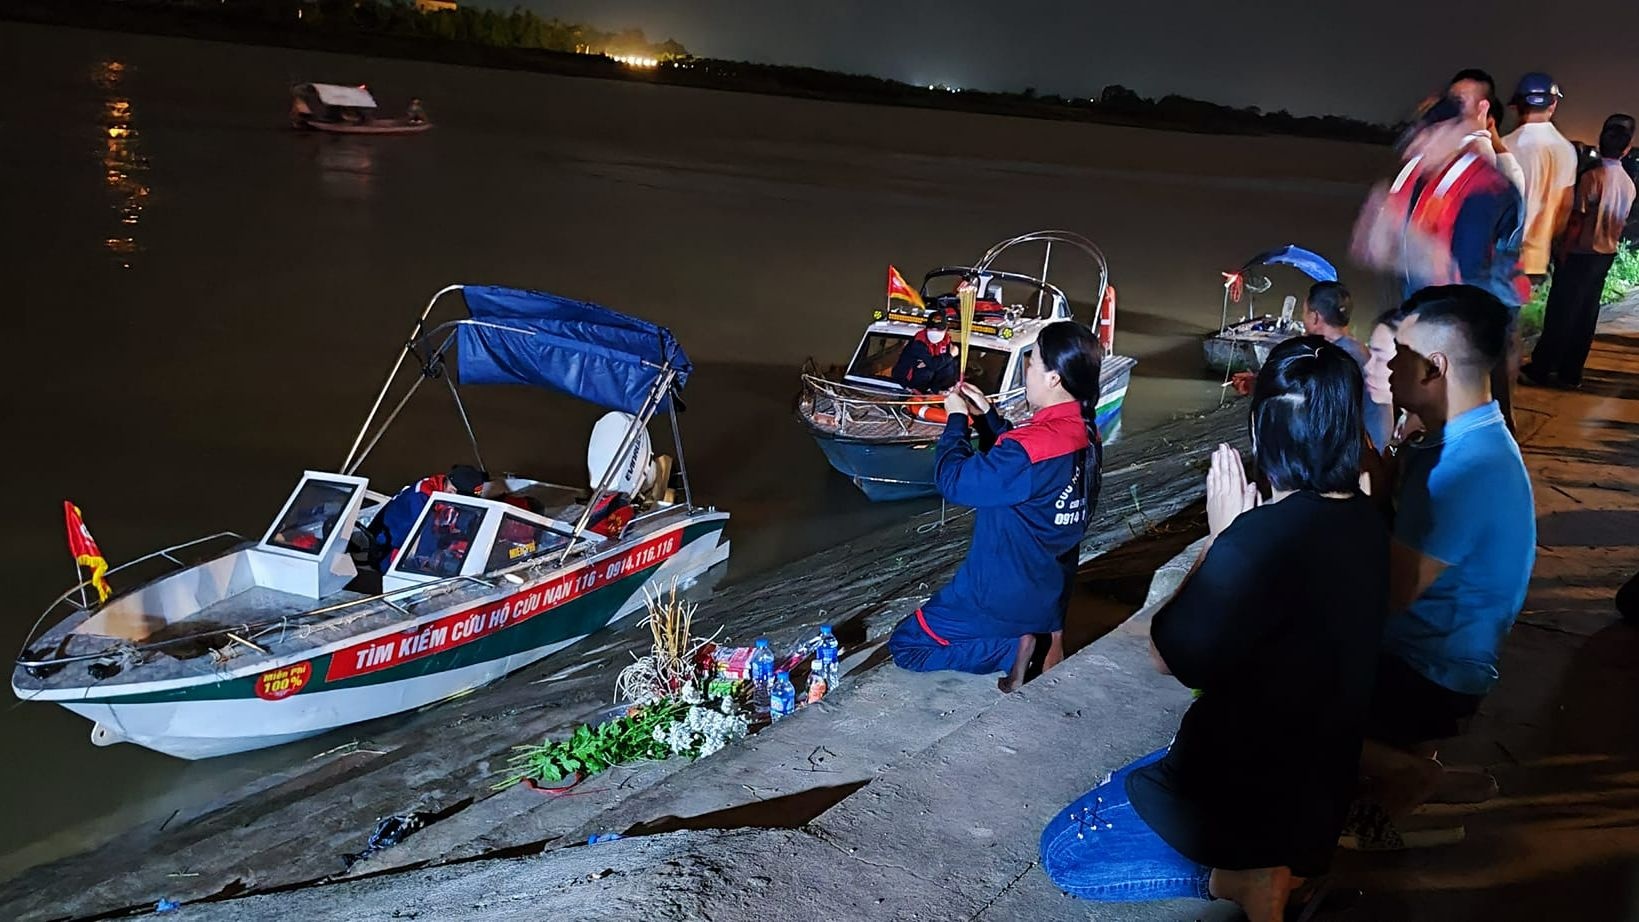 Thương tâm: Đã tìm thấy thi thể của 3 cháu nhỏ trong vụ 4 người mất tích trên sông Đào ở Nam Định - Ảnh 1